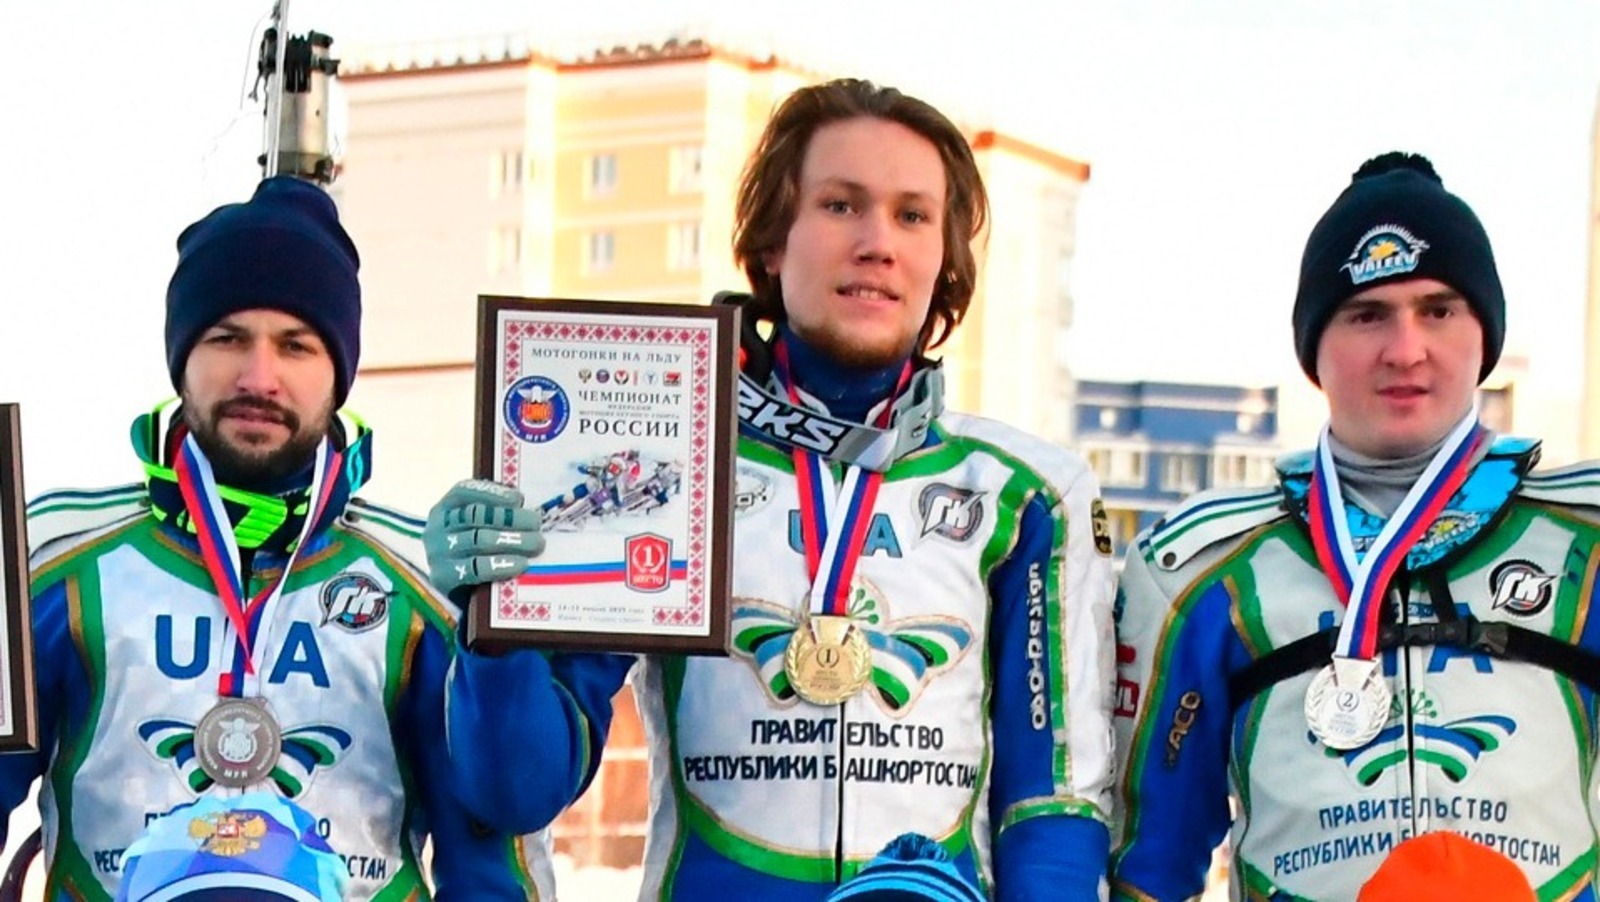 Уфа çынни Никита Богданов - Раҫҫей моторспорчӗн федерацийӗн пӗрремӗш чемпионӗ